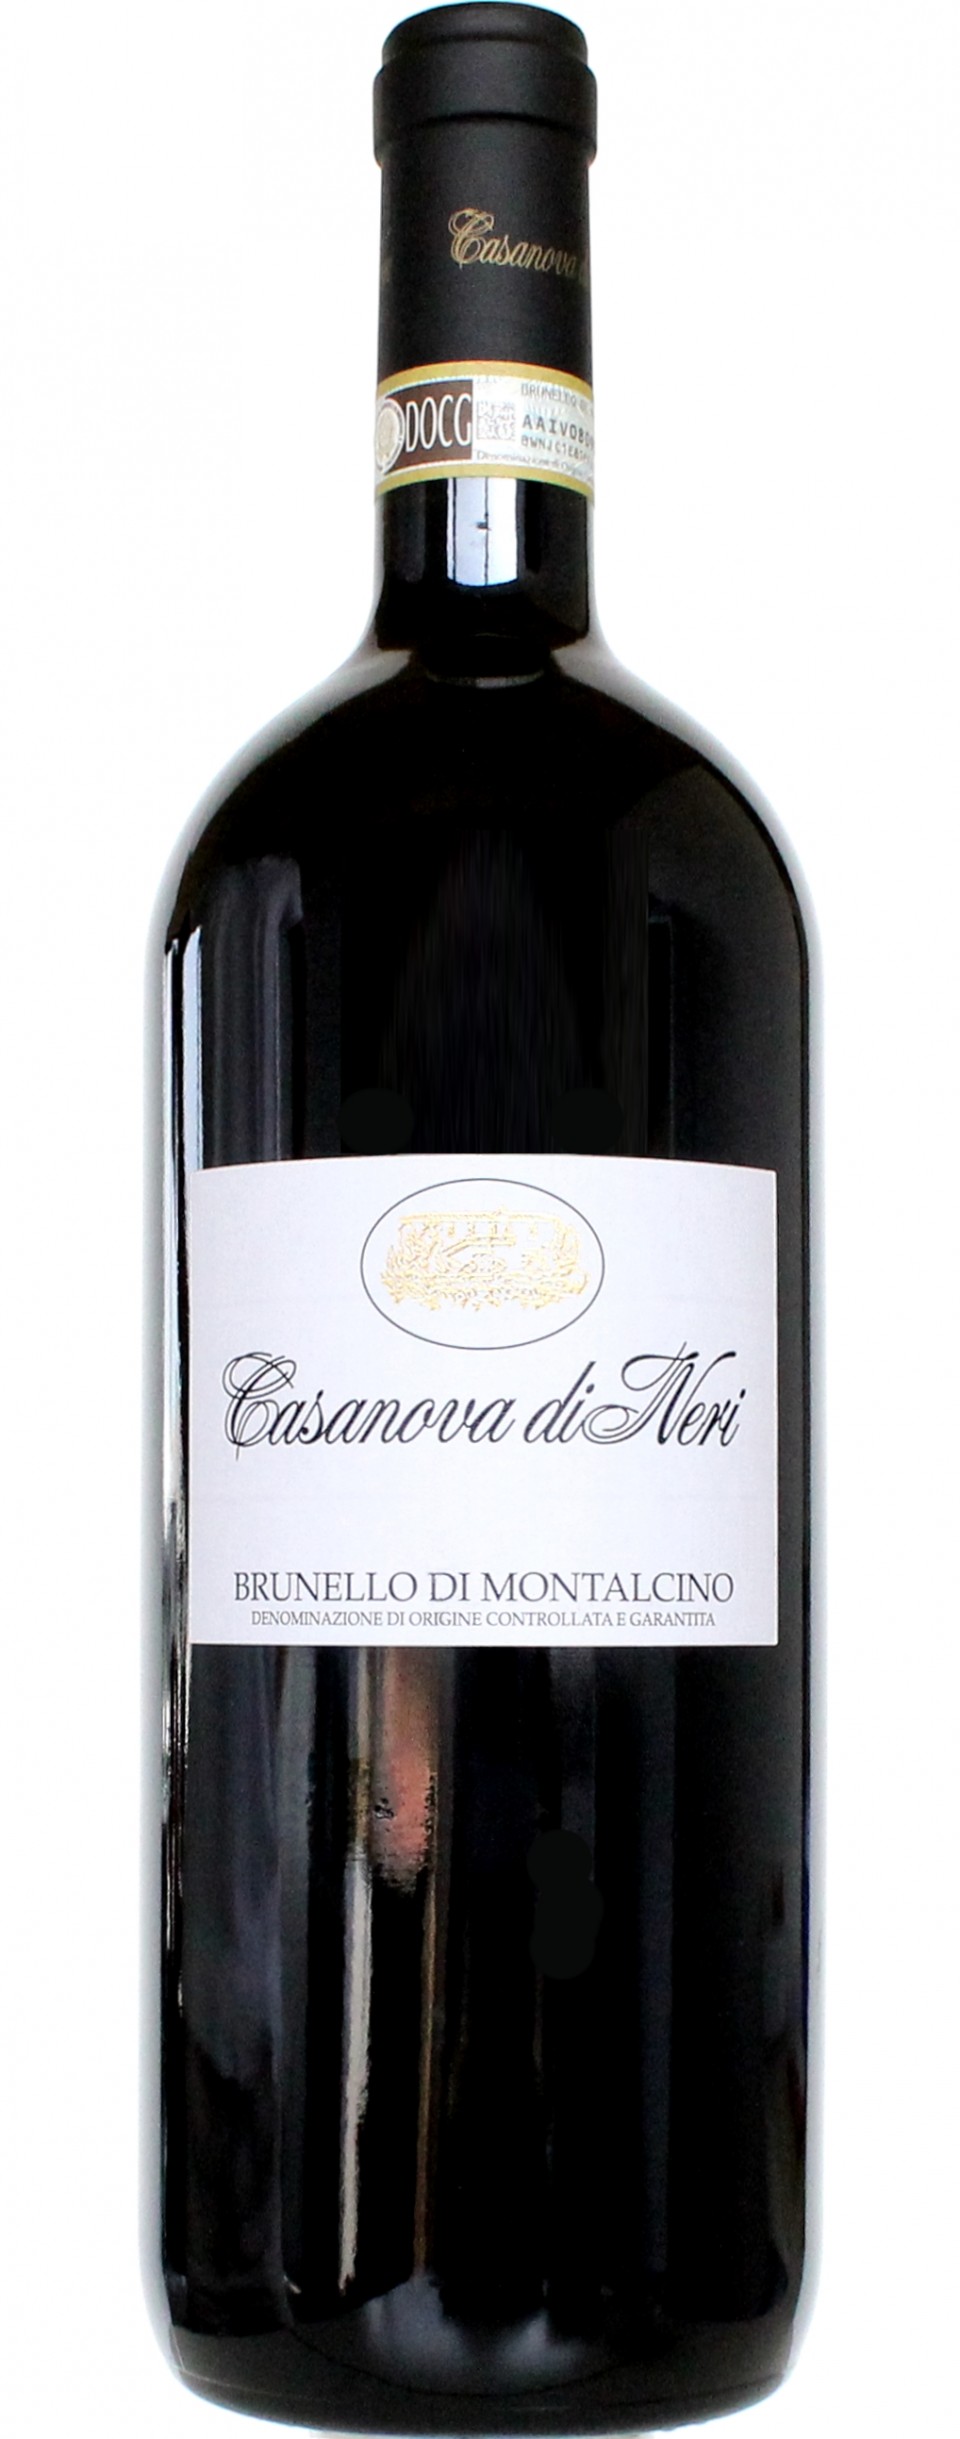 Brunello di Montalcino, Casanova di Neri 2015 (0,75l)